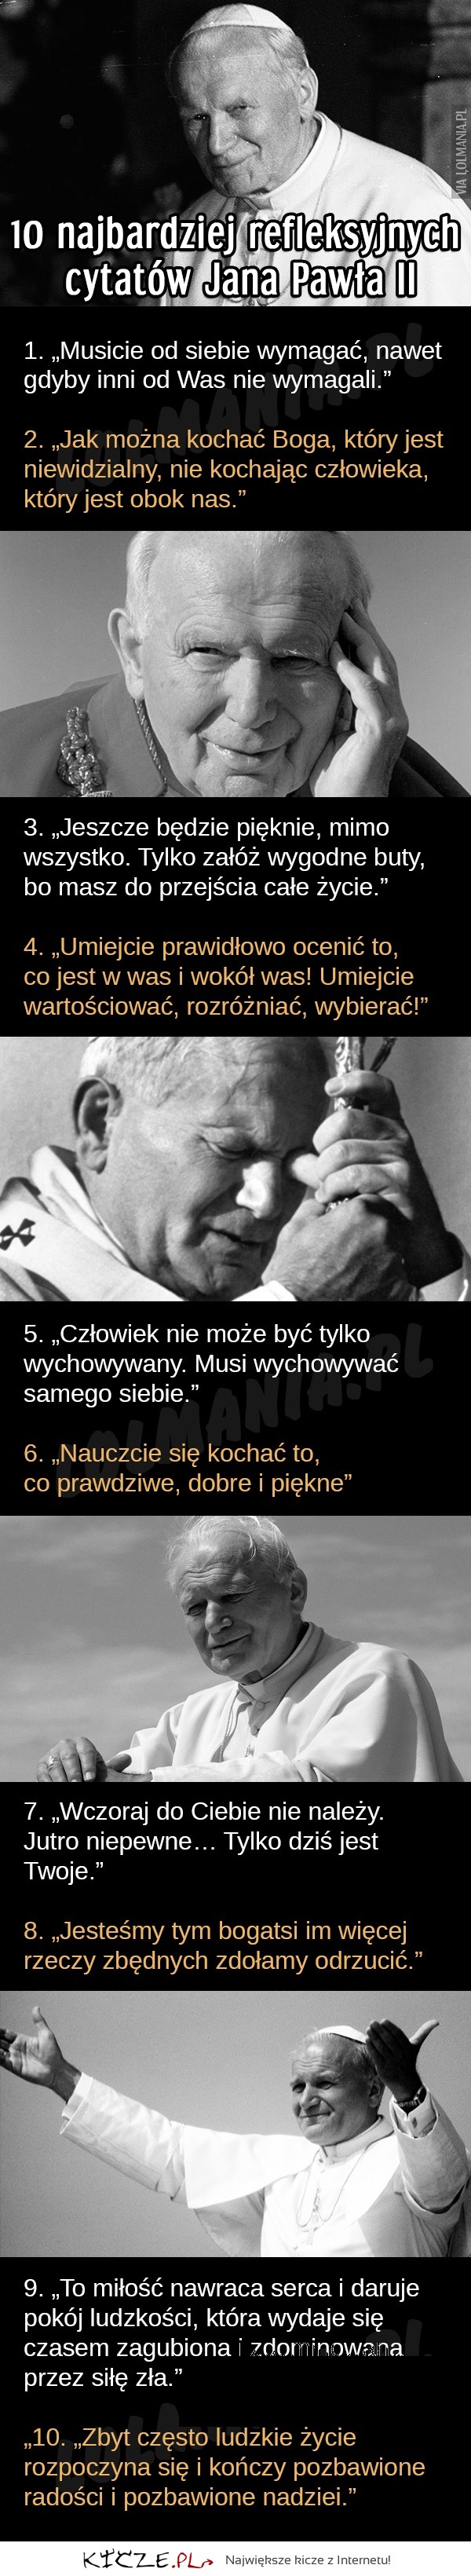 Najważniejsze cyctaty Jana Pawła II